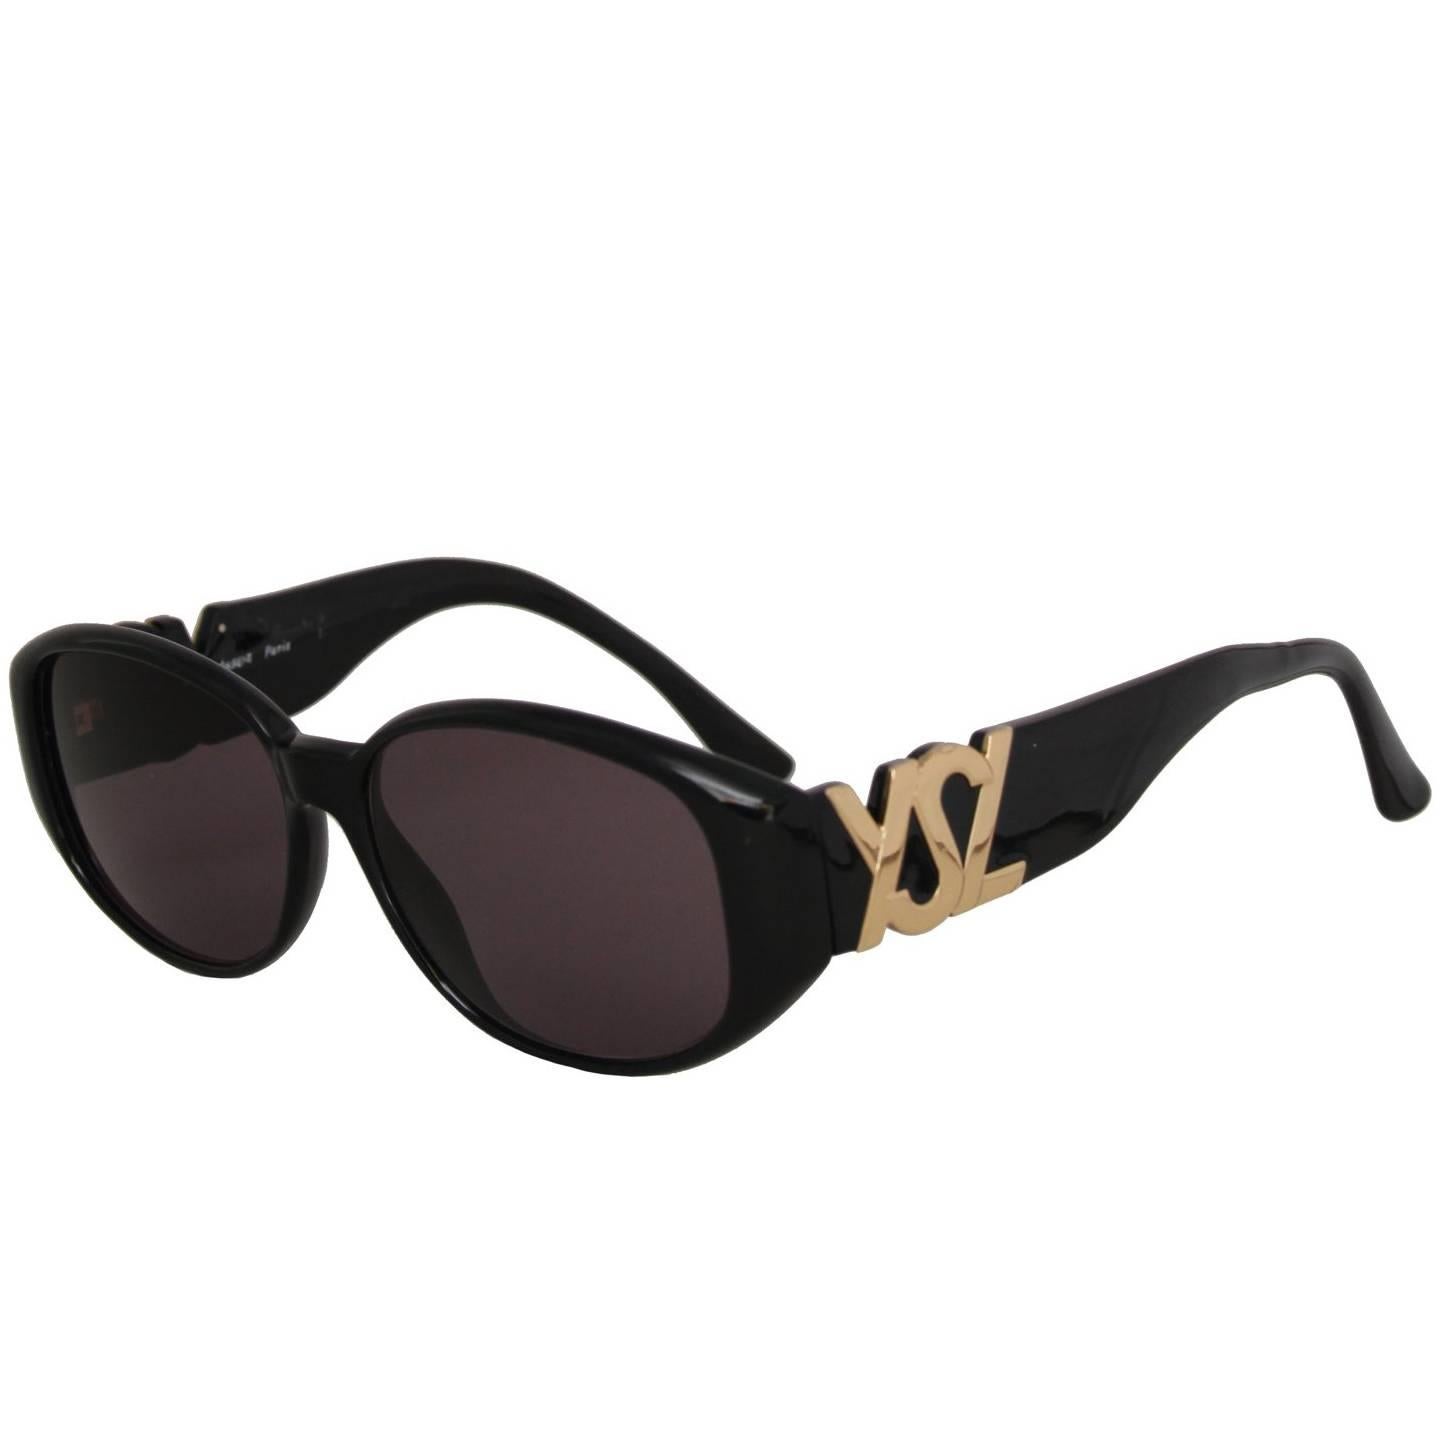 1990s Yves Saint Laurent Black Frame Sunglasses W. Gold 'YSL' Detail